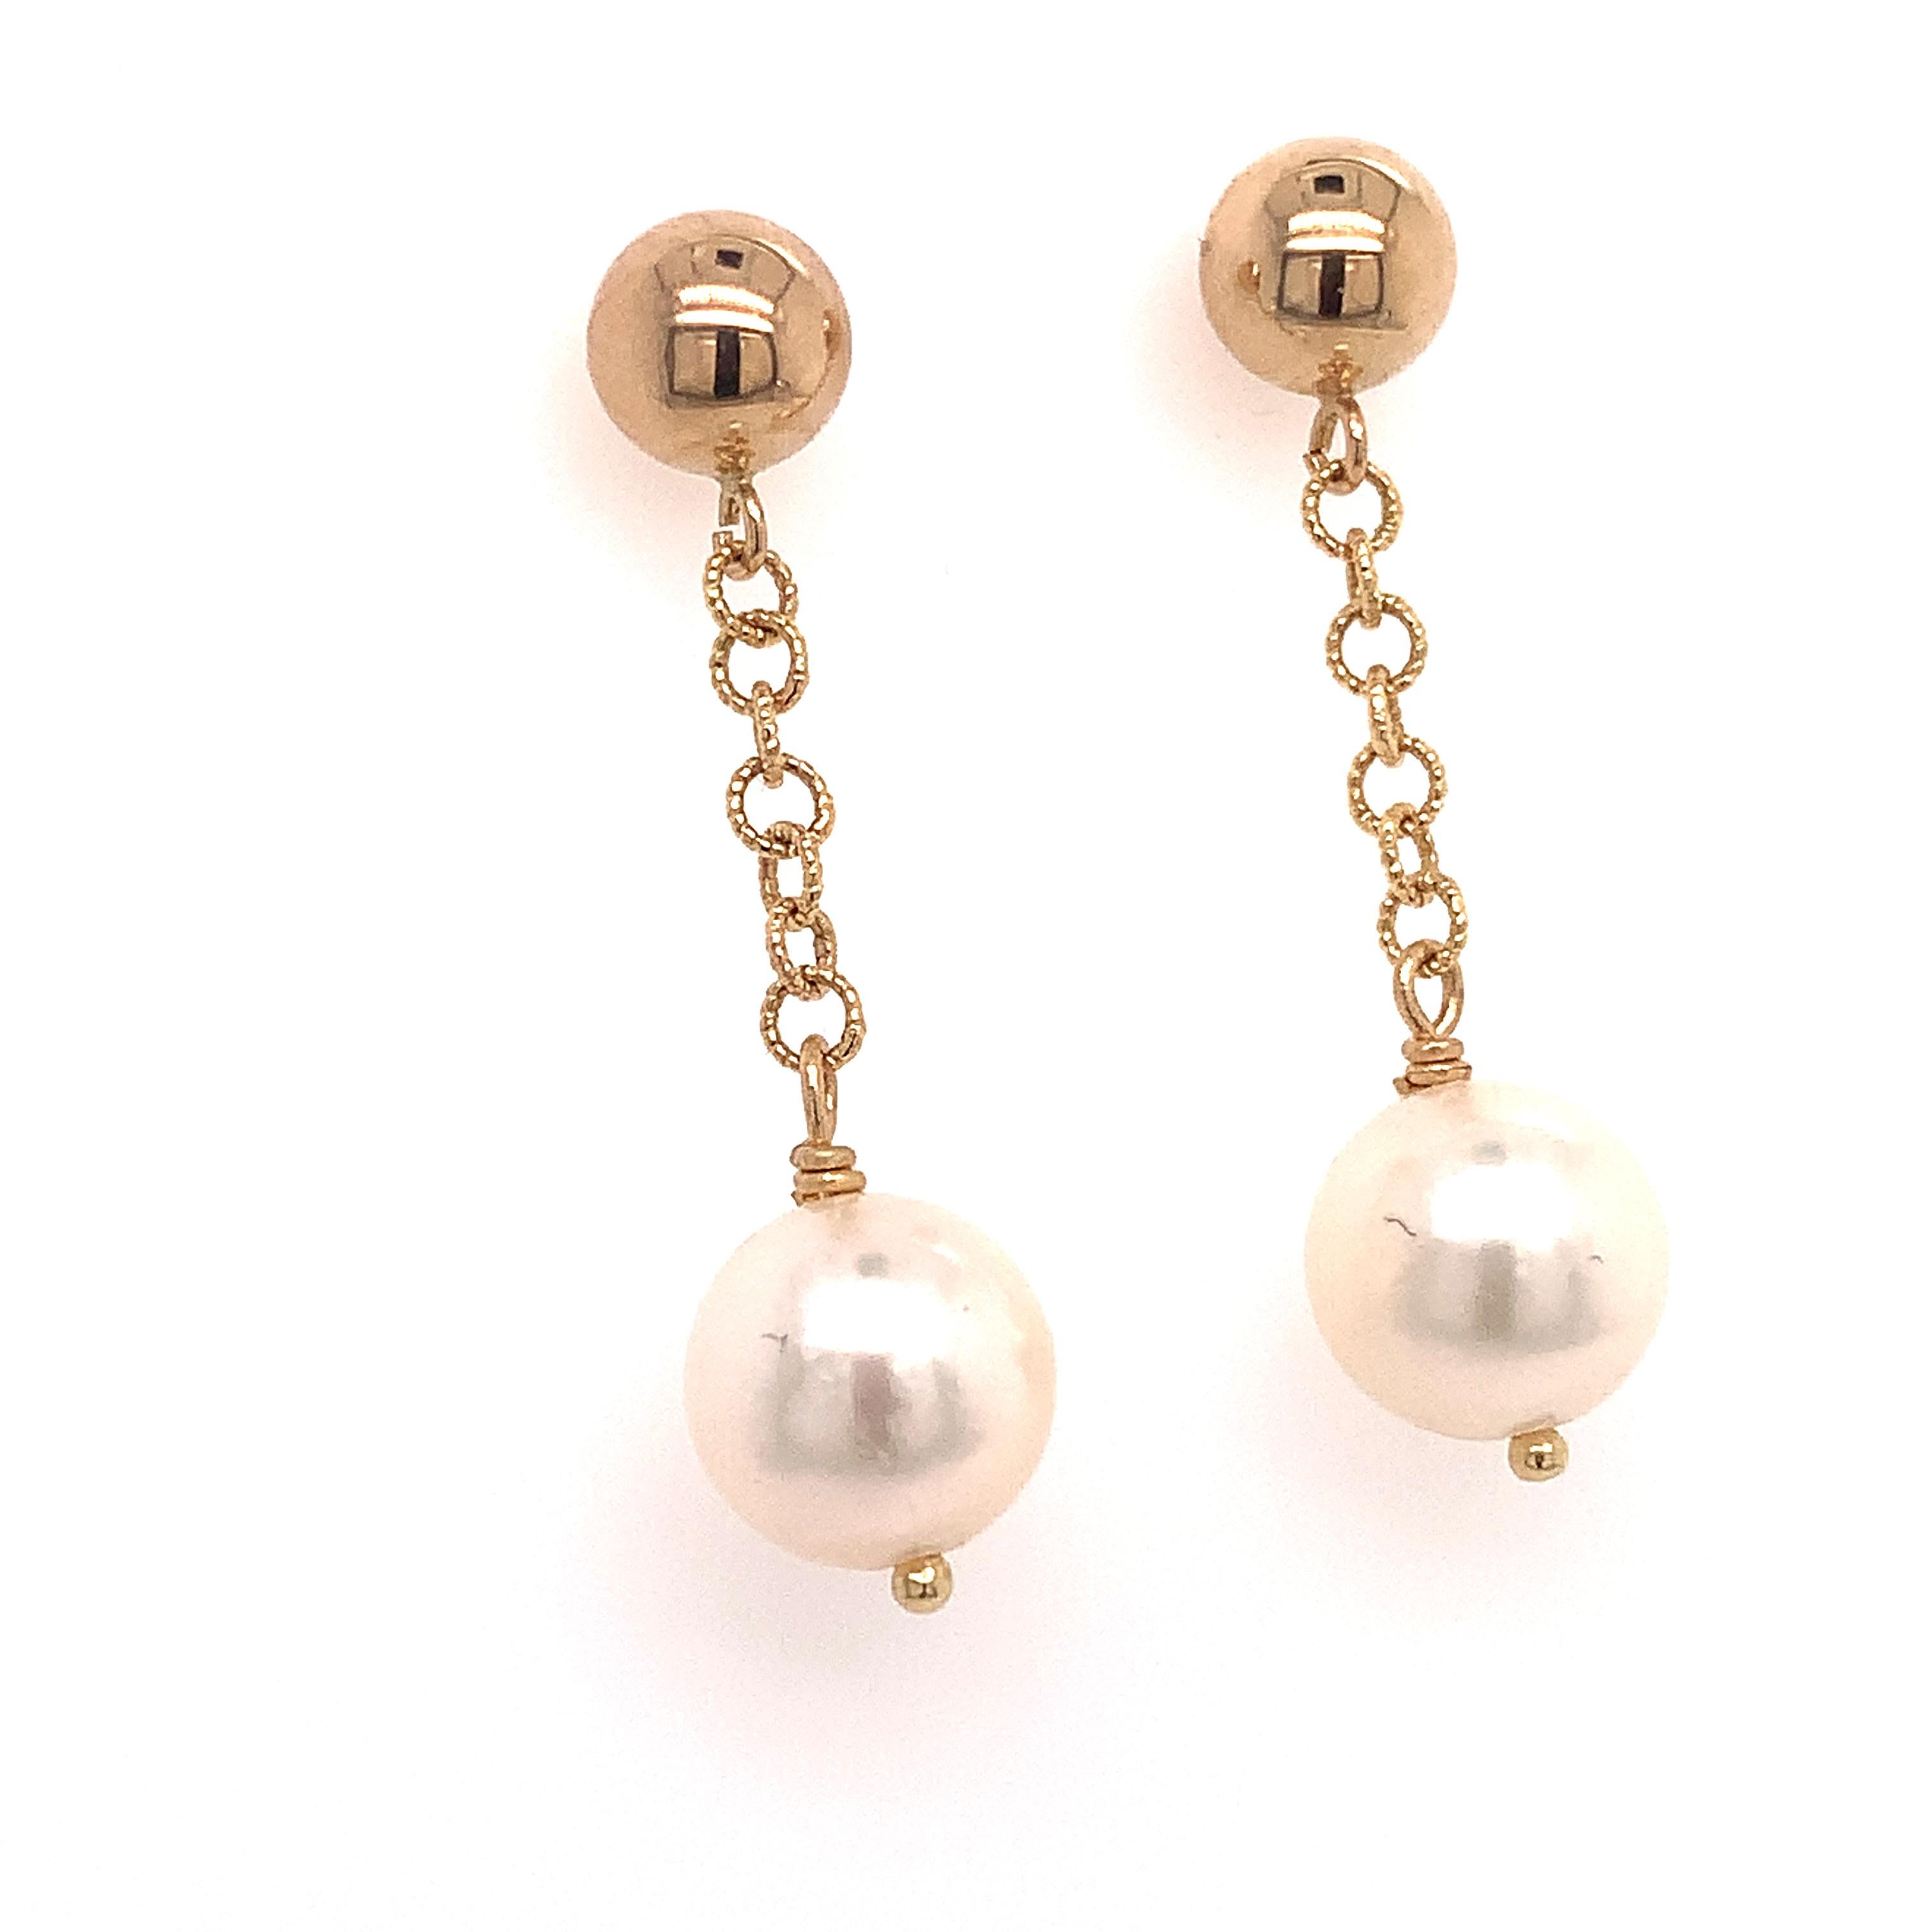 Boucles d'oreilles pendantes en perles d'Akoya de qualité supérieure, en or 14k, 8,19 mm, certifiées 999 $ 017542

Il s'agit d'une pièce de joaillerie unique, glamour et faite sur mesure !

Rien ne dit mieux 